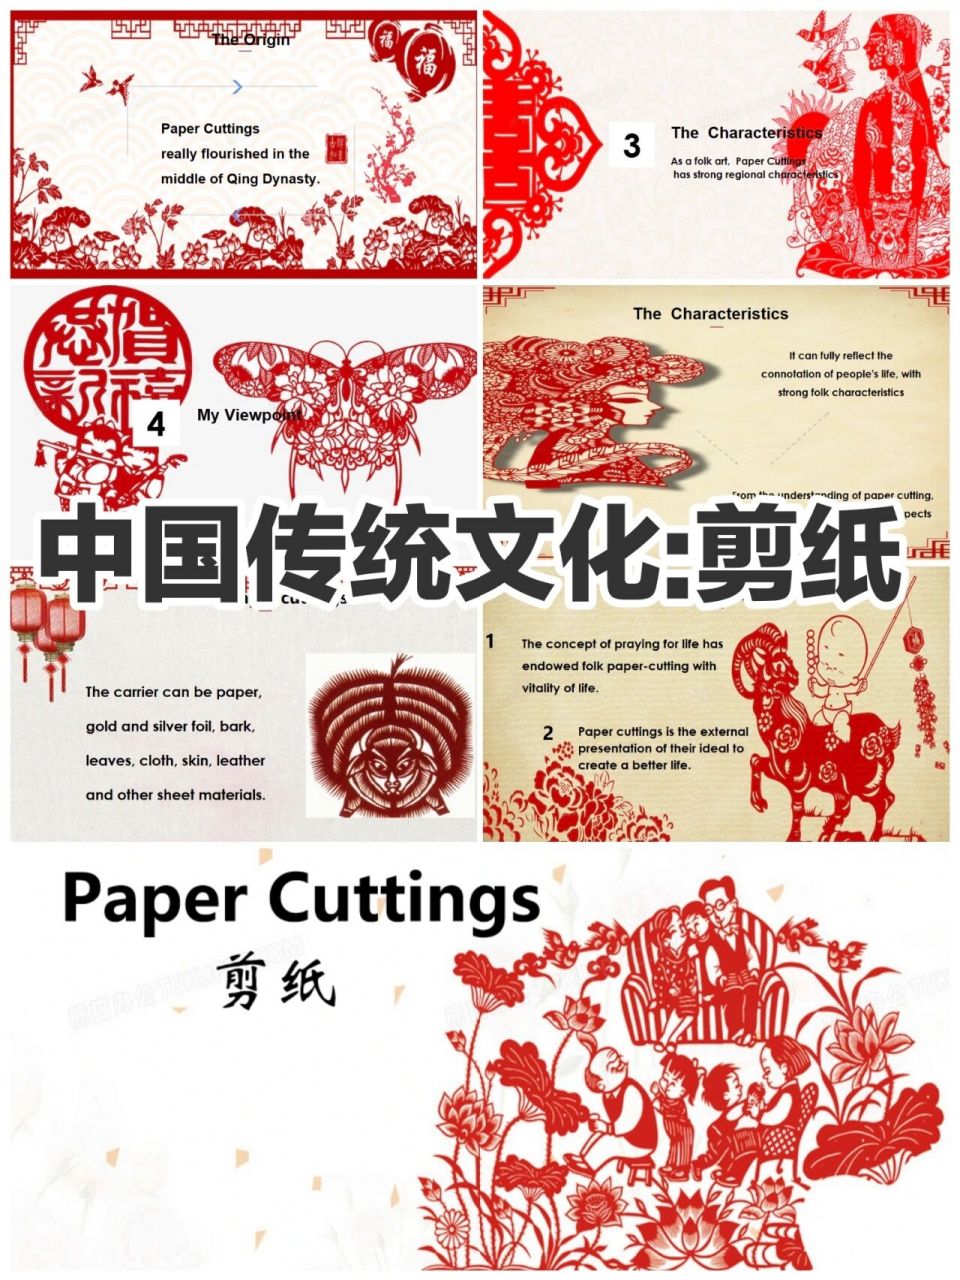 中国剪纸文化英语介绍图片